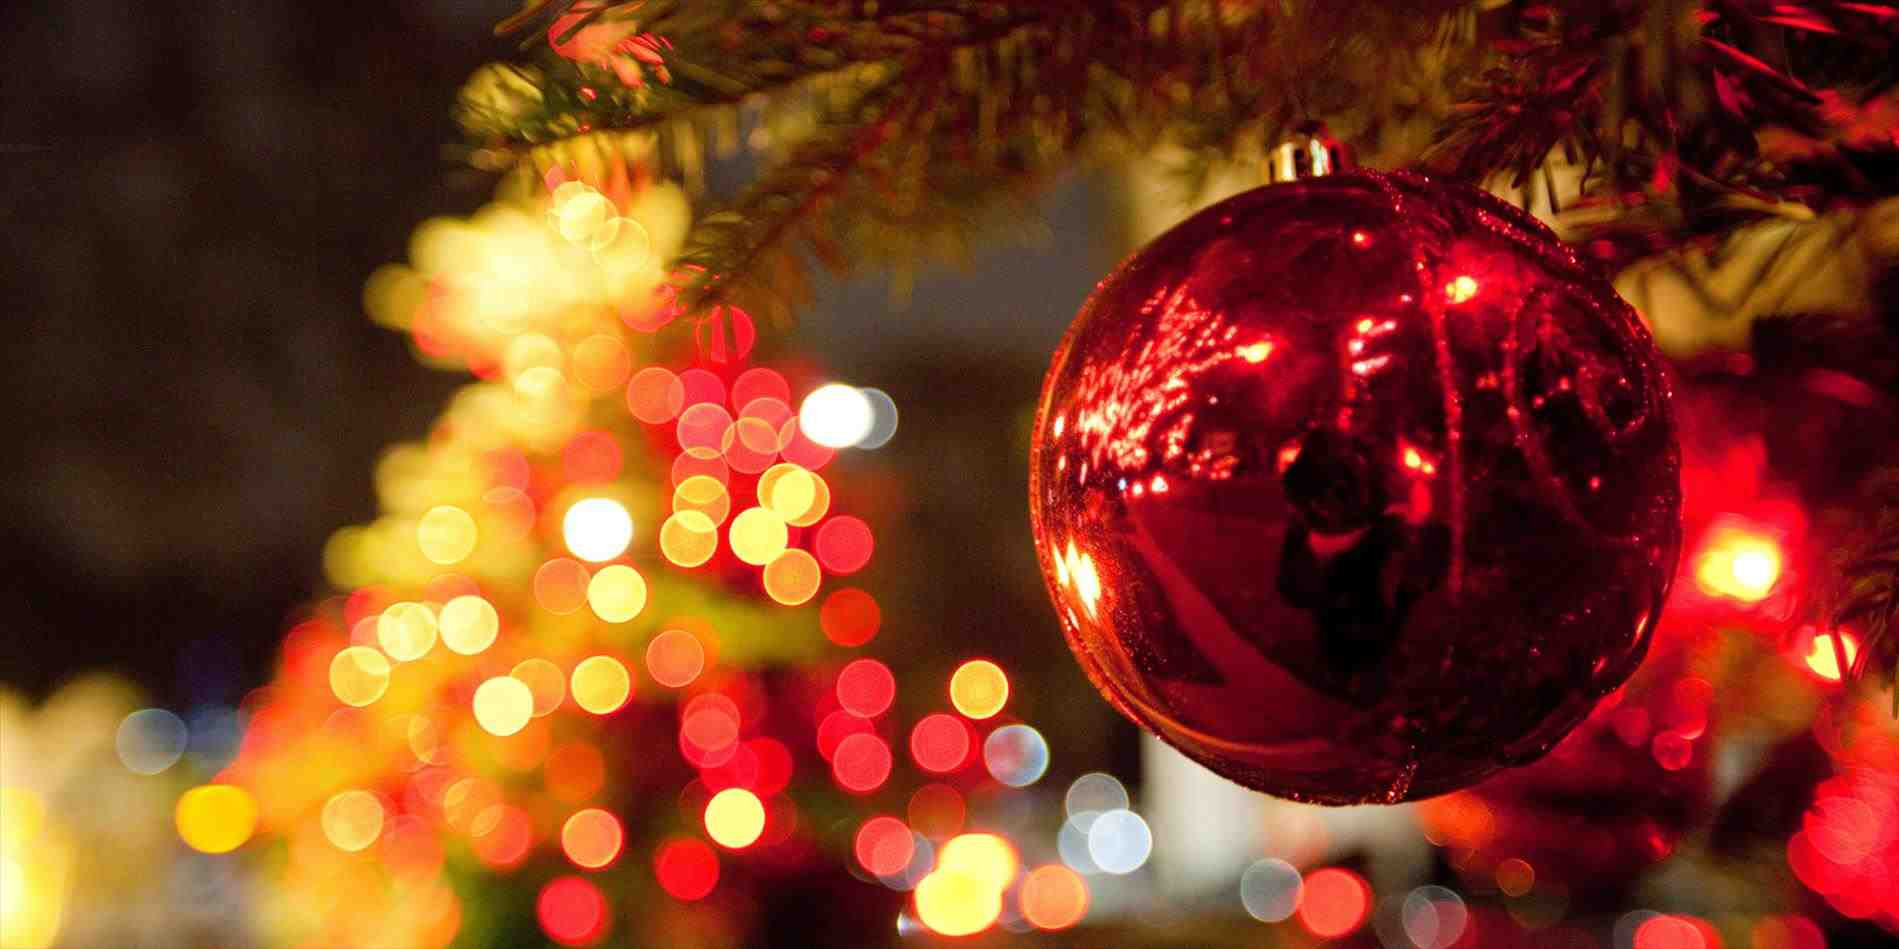 Mùa Giáng sinh là thời điểm để tặng quà cho những người mà bạn yêu thương. Hãy cùng xem qua những ý tưởng tuyệt vời cho quà tặng Giáng sinh để khiến người nhận cảm thấy ấm áp và hạnh phúc nhất.